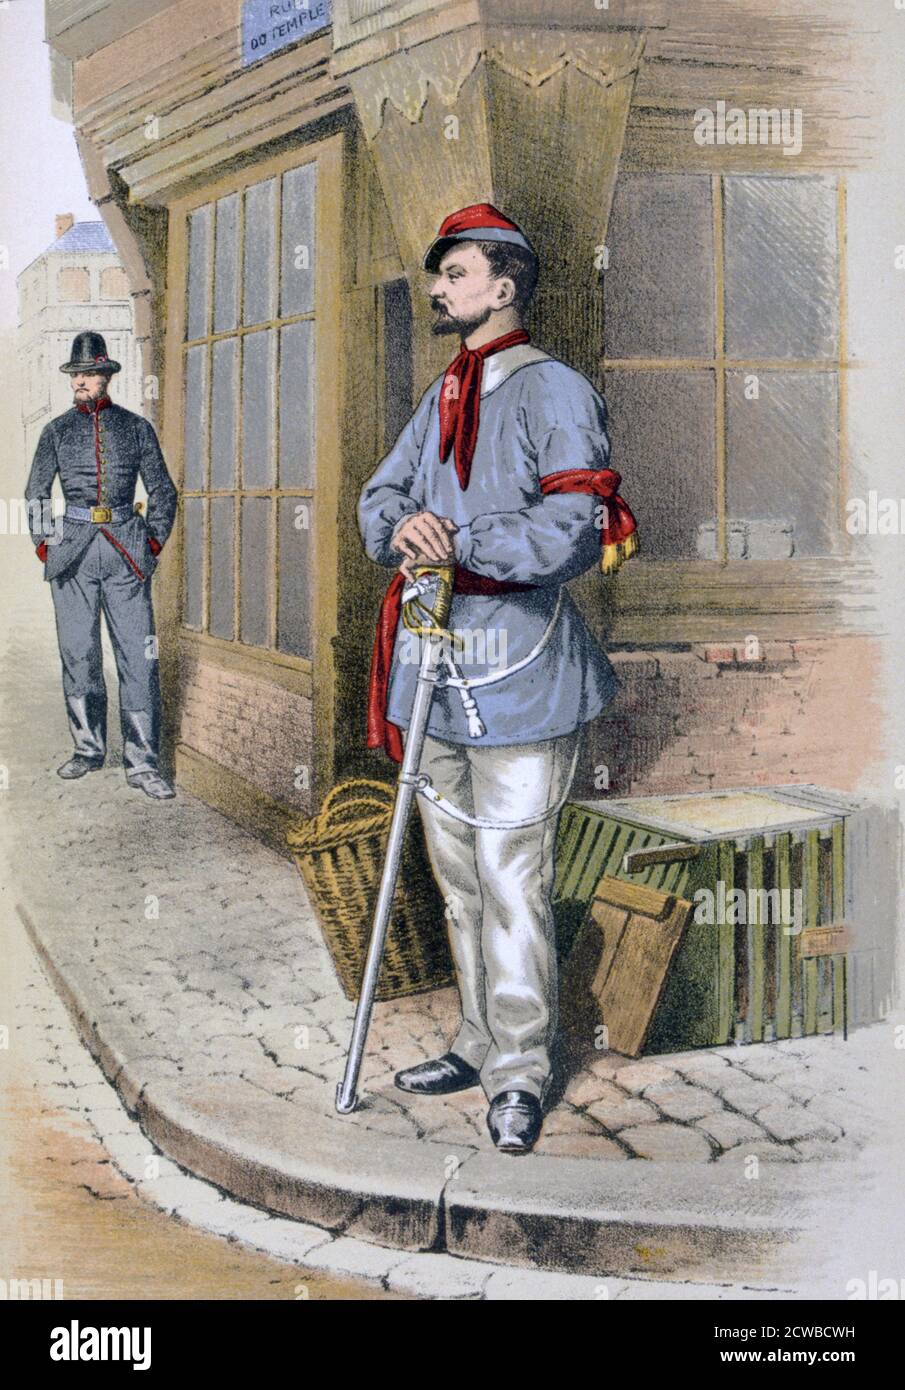 Parisian Civic Guard', 1887, by the French artist A Lemercier. A print from Francois Cudet's Histoire des Corps de Troupes de la Ville de Paris, France, 1887. Stock Photo